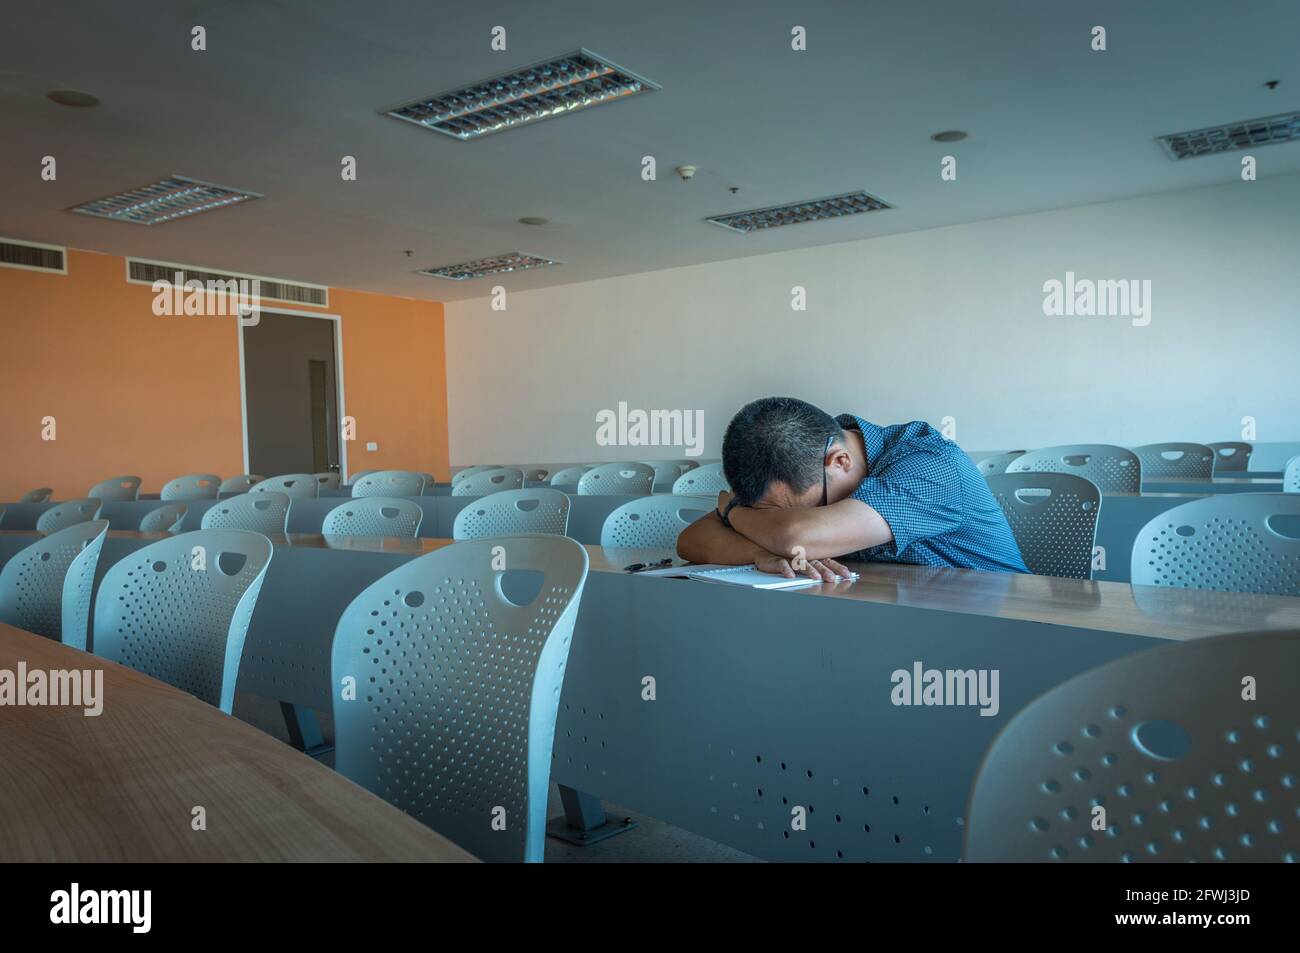 Un homme asiatique d'âge moyen est en train de se mettre seul sur le long bureau dans la salle de classe, vue en perspective, le reste des chaises sont vides. Banque D'Images